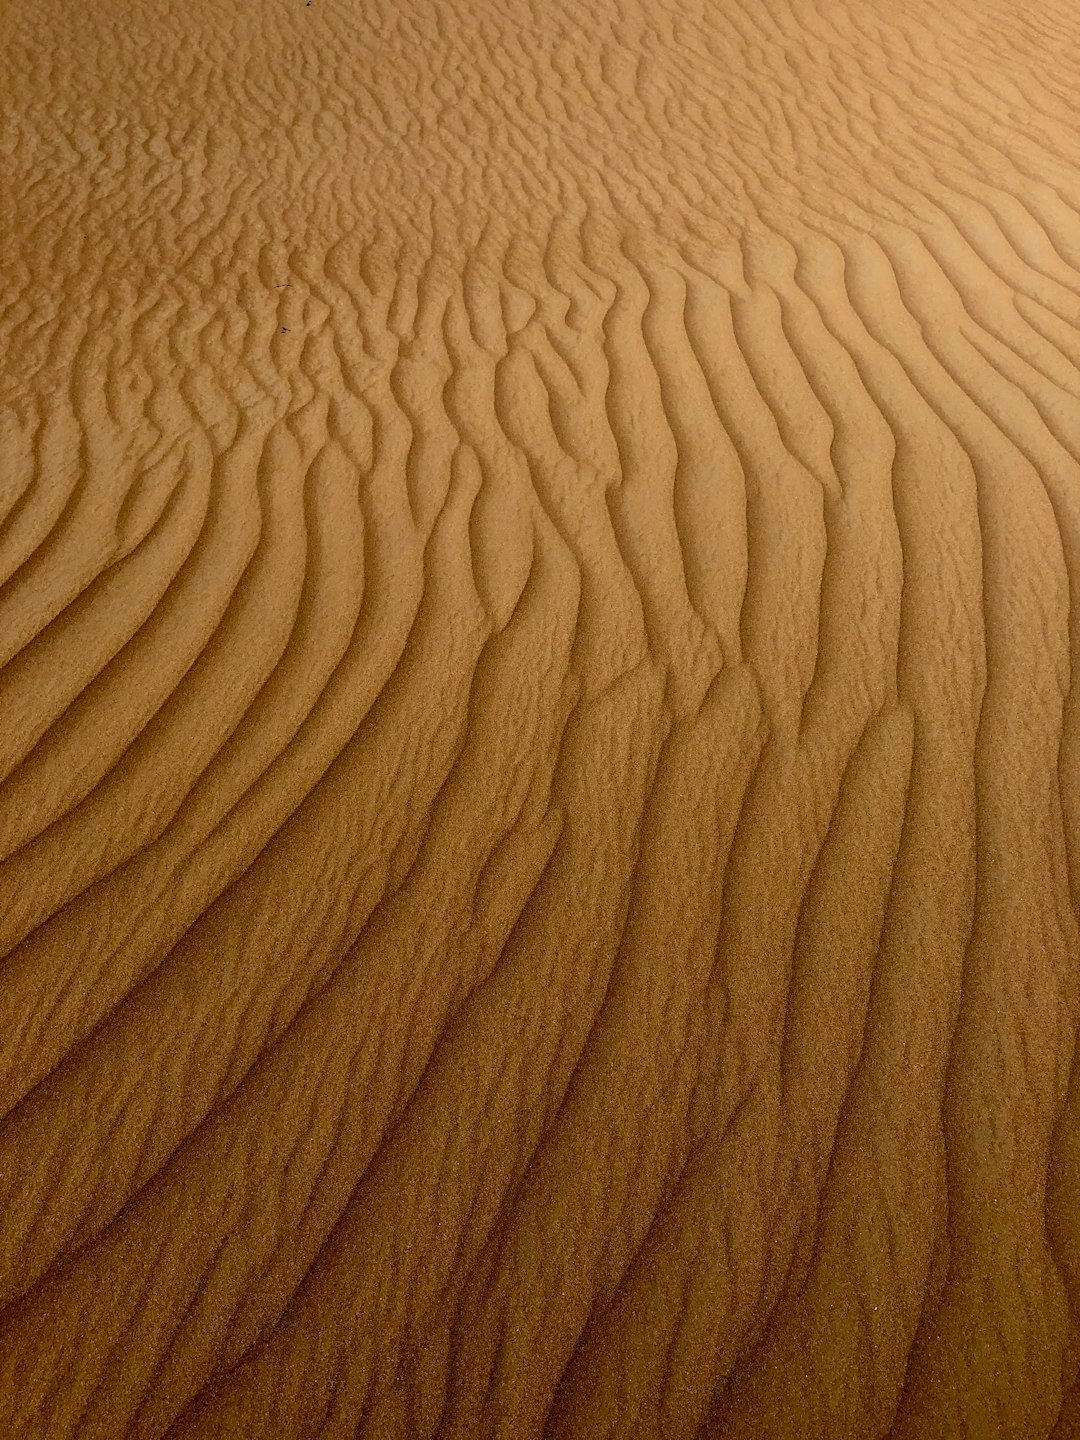 Desert photo spot Margham Al Ain